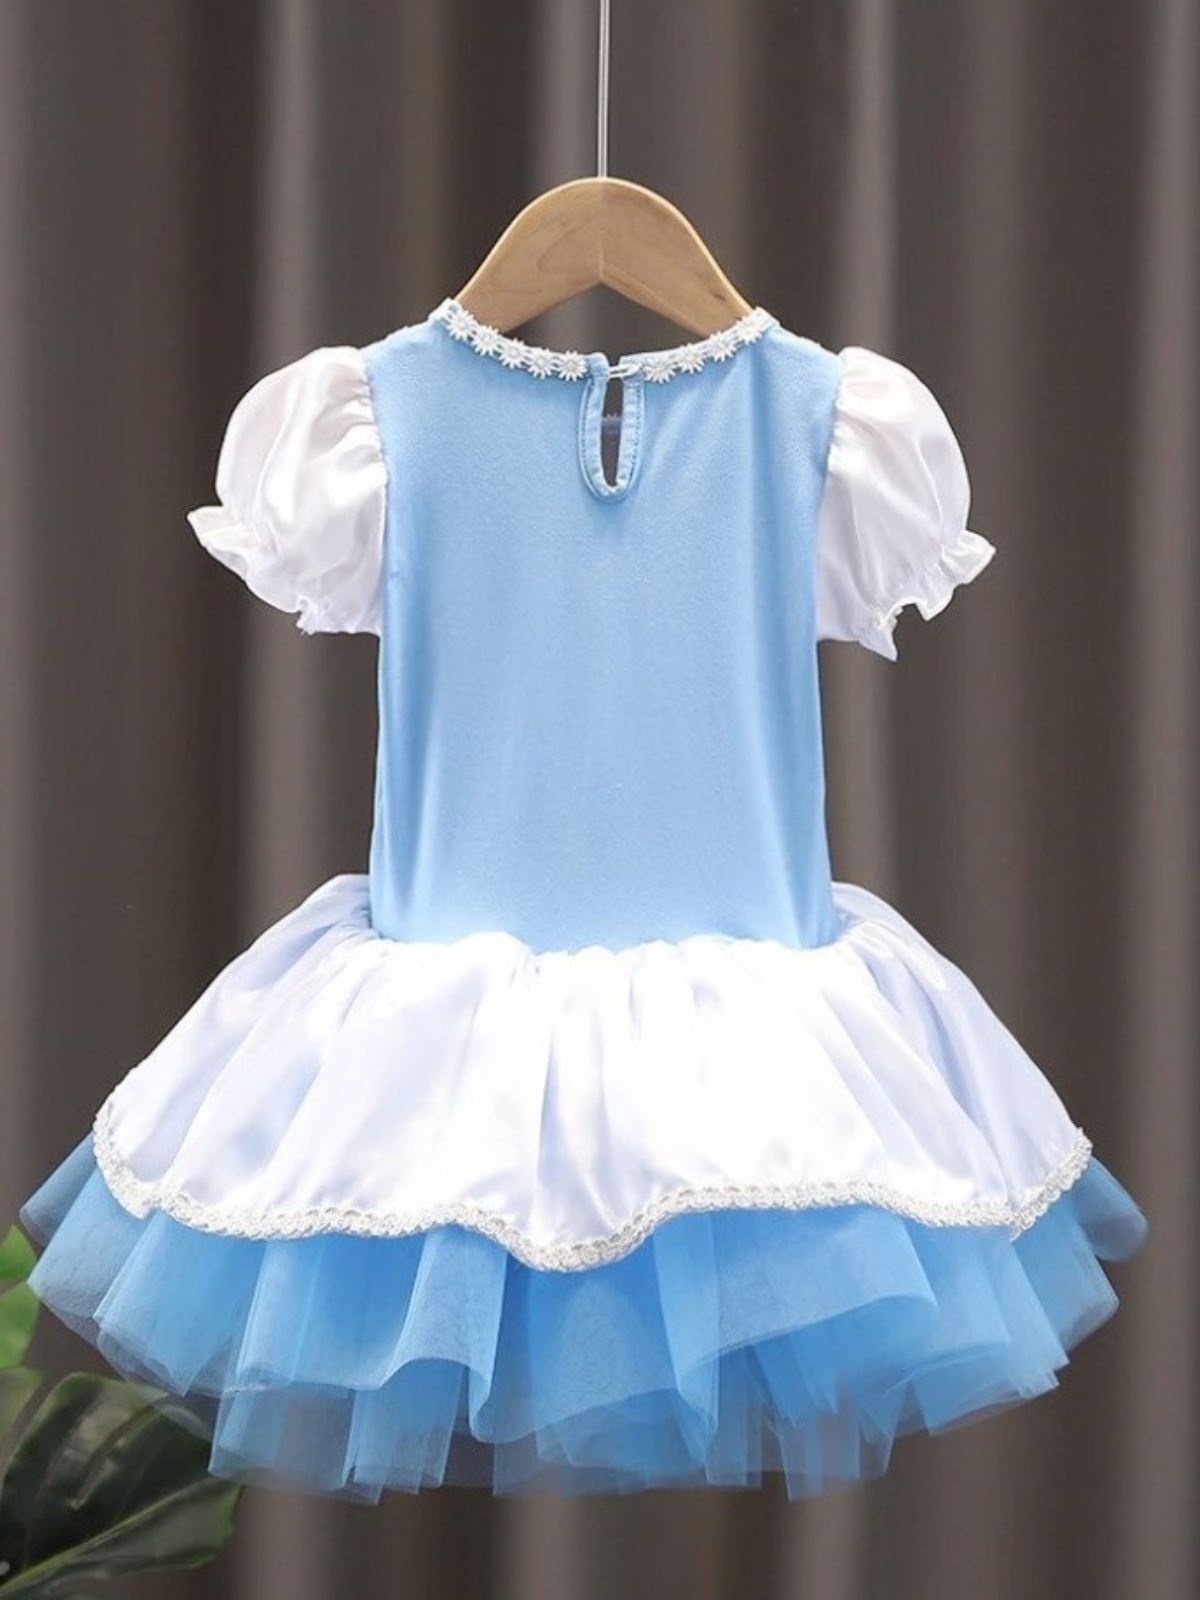 Little Girls Princess Dresses | Cinderella Inspired Ballerina Dress